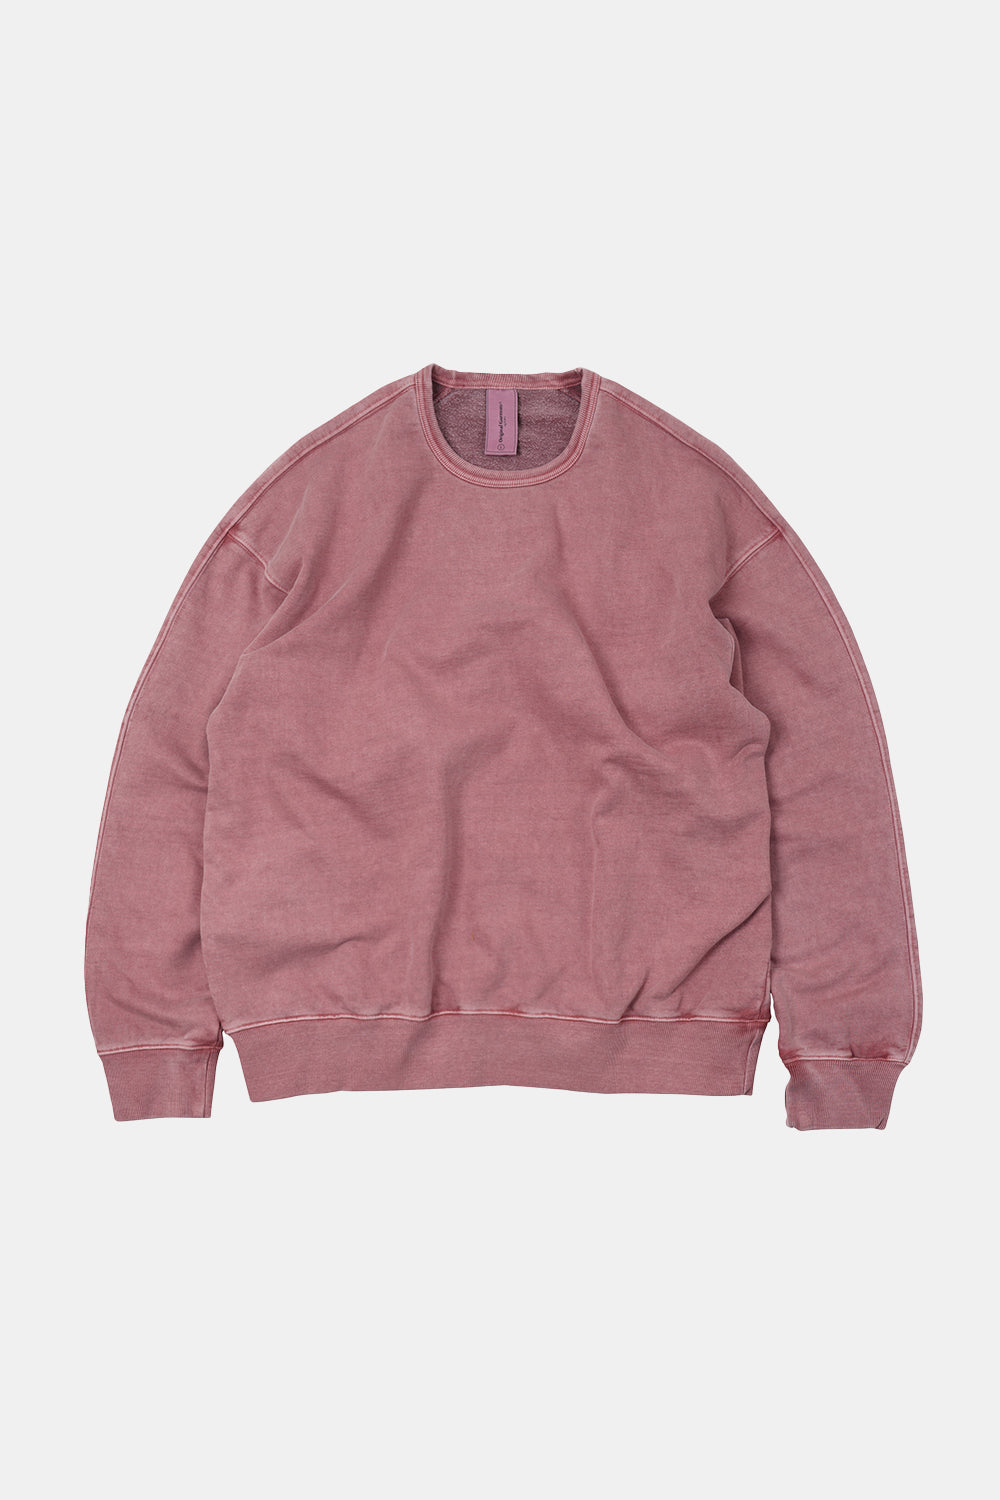 Frizmworks OG Pigment Dyeing Sweatshirt (Pink) | Number Six